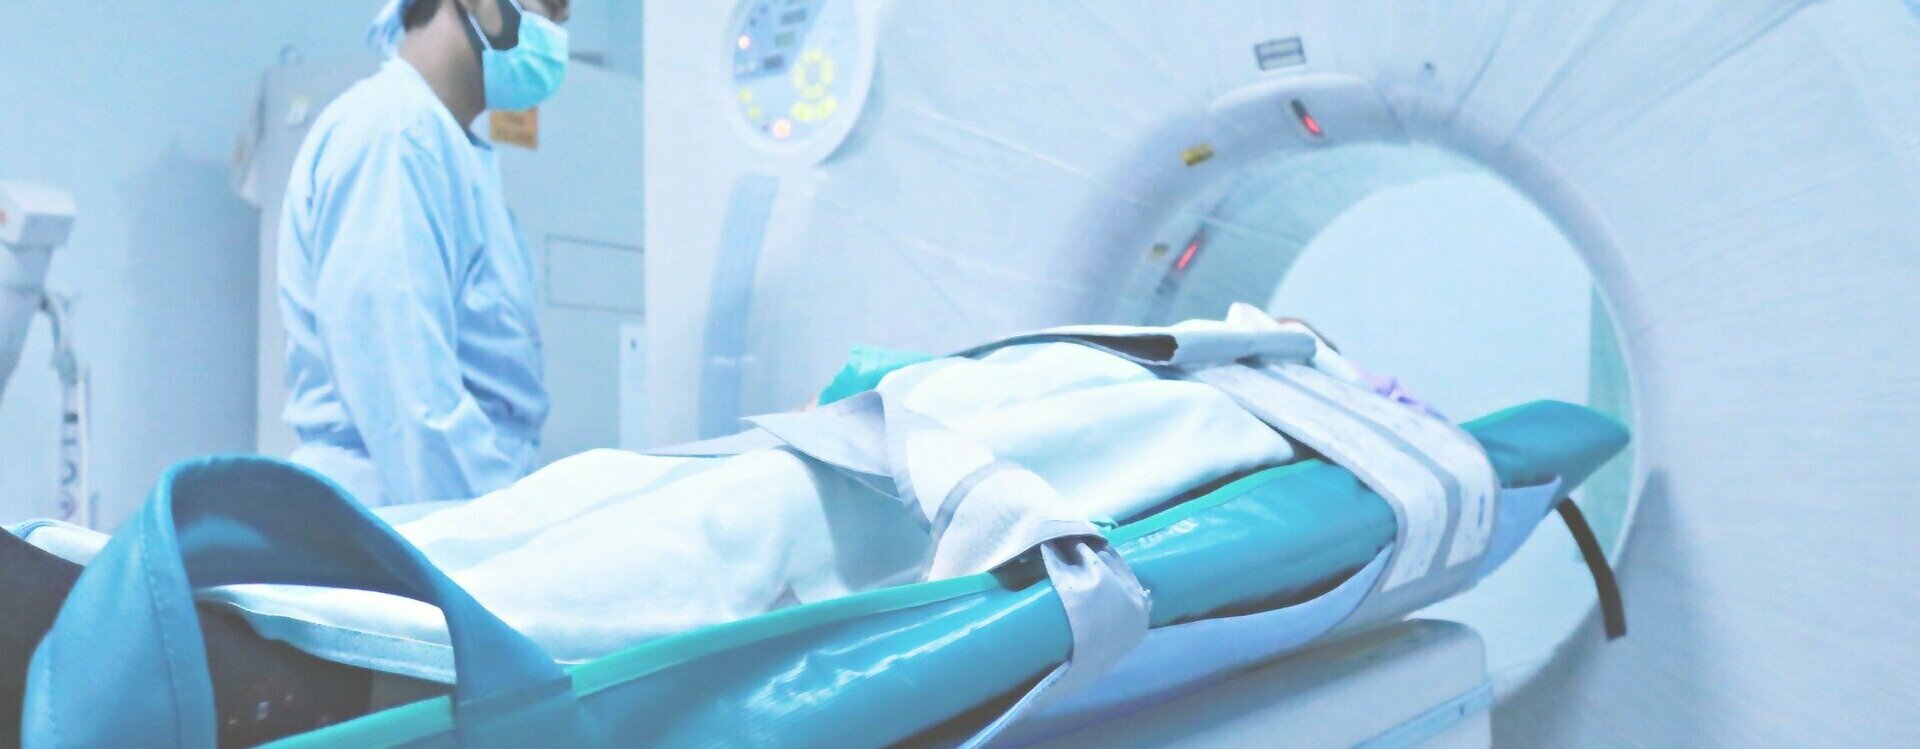 La Collégiale de Radiologie Assistance Publique Hôpitaux de Paris